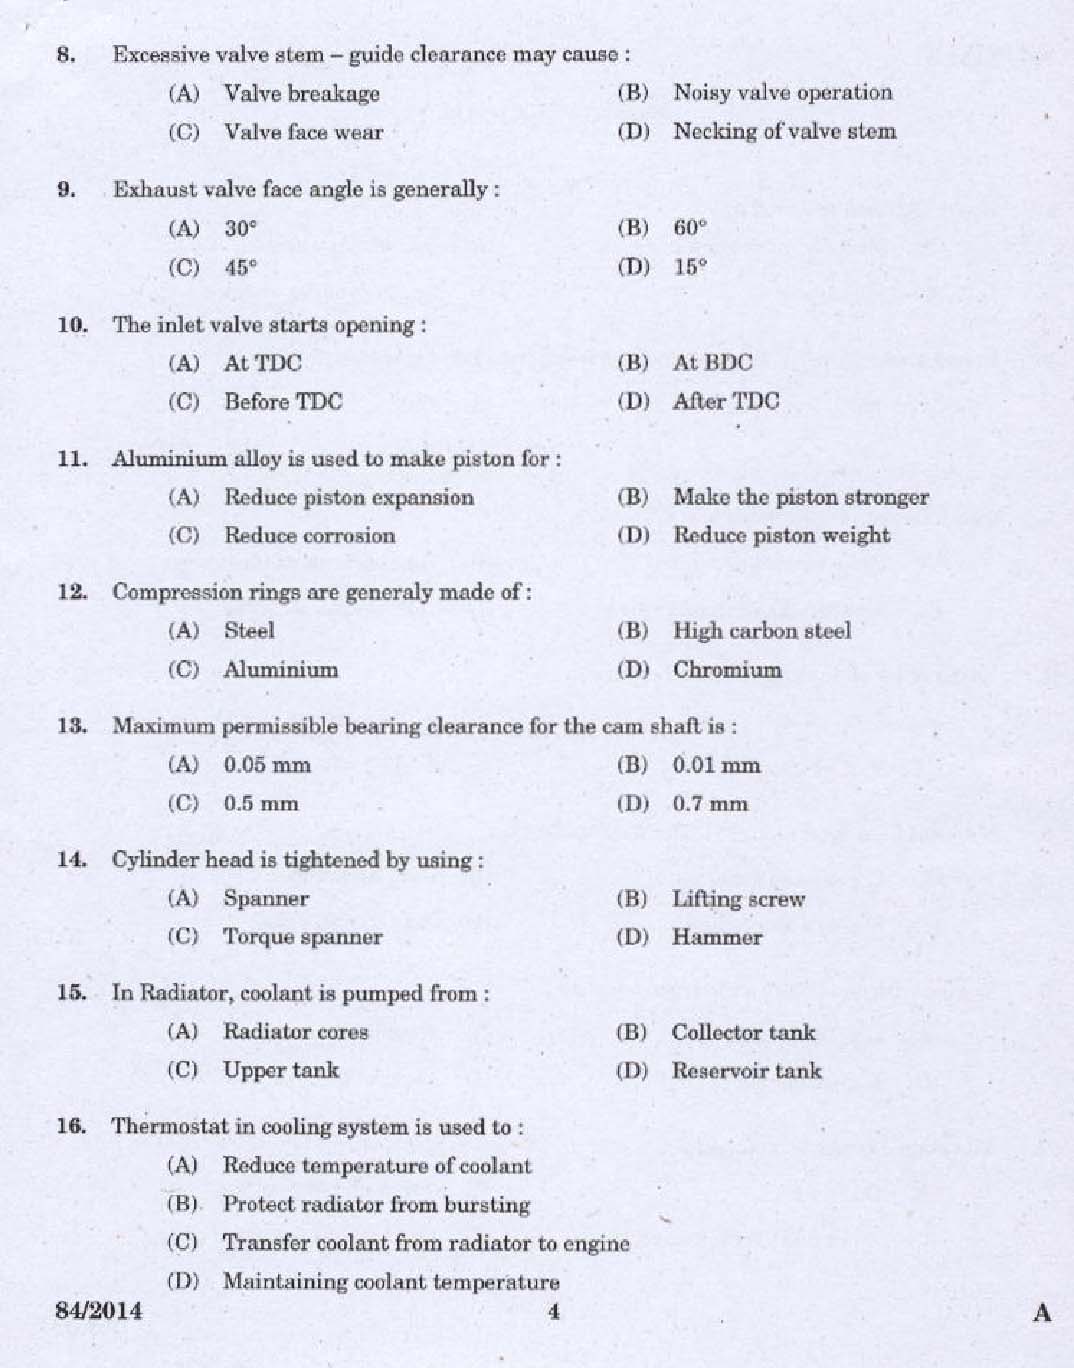 Kerala PSC Junior Instructor Exam 2014 Question Paper Code 842014 2